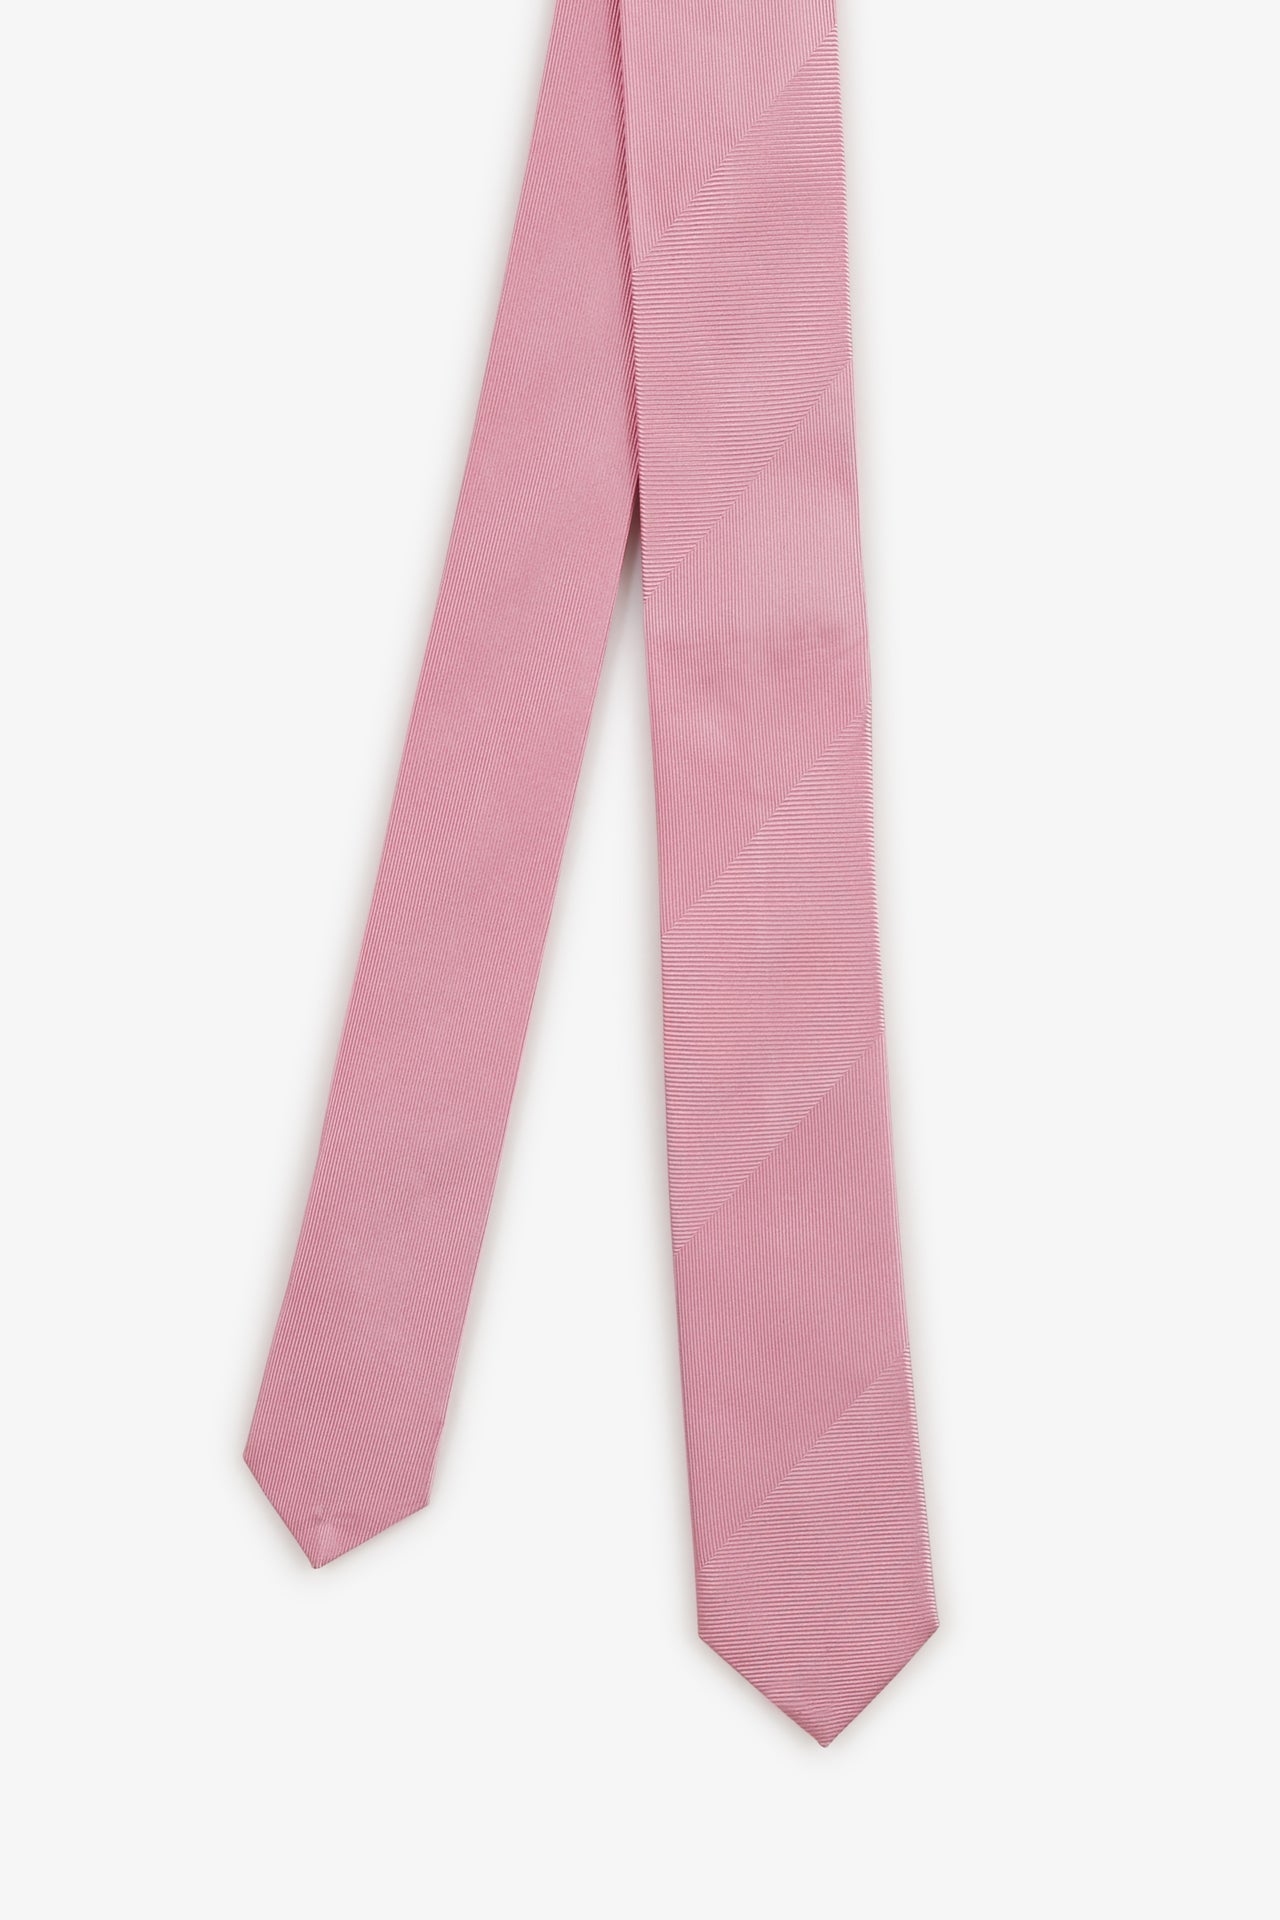 Cravate rose unie - Image 1